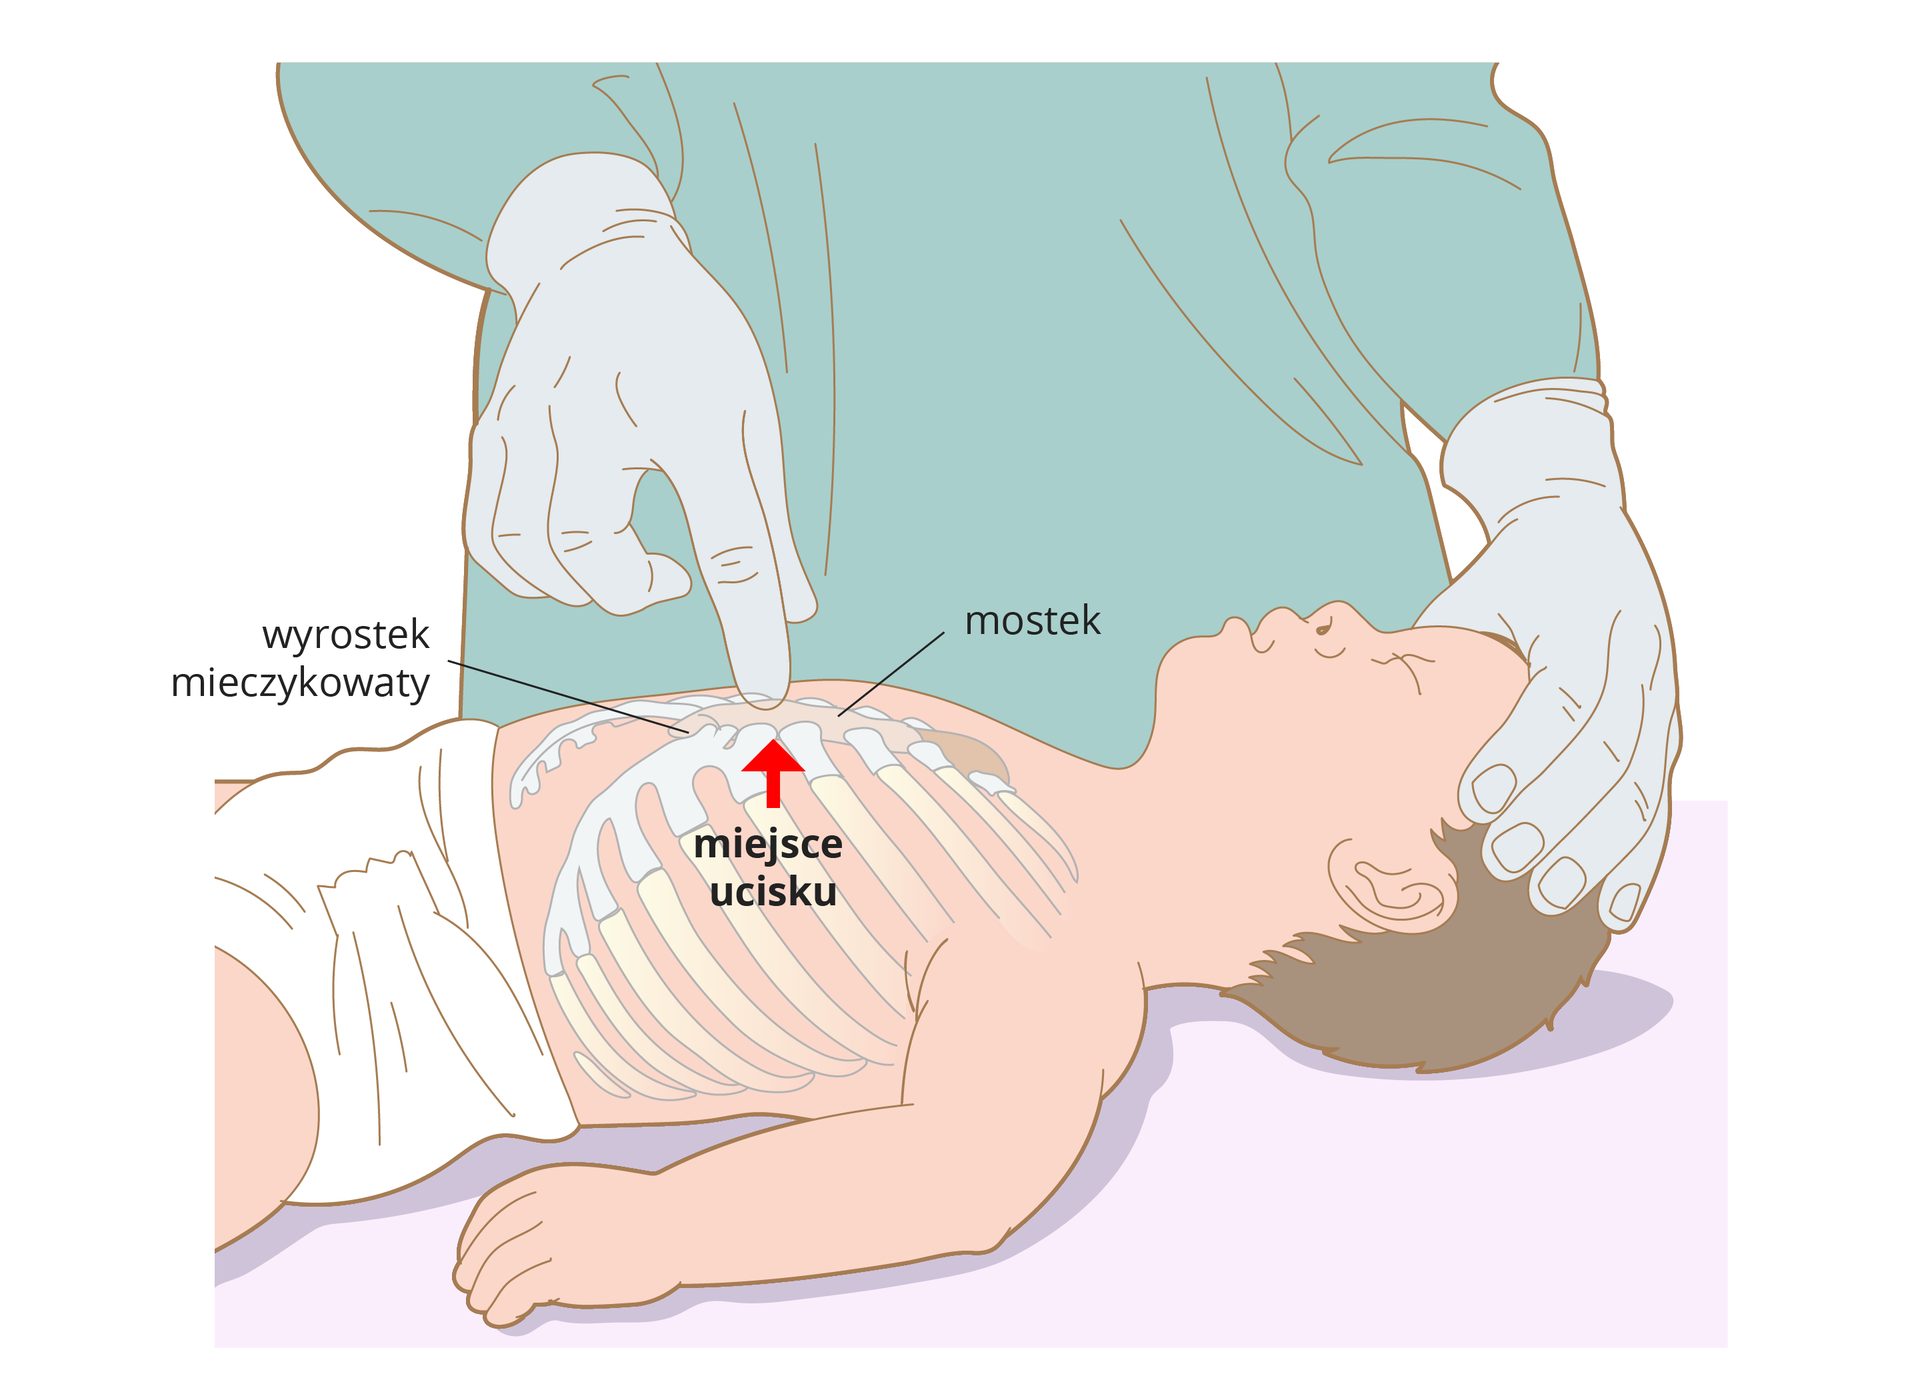 Ilustracja przedstawia niemowlę leżące na plecach bokiem do obserwatora. Niemowlę bez ubranka w samej pieluszce. Głowę przytrzymuje lekarz jedną ręką. Drugą ręką wskazuje na klatkę piersiową dziecka. Na ilustracji zaznaczone są żebra i mostek. Pionowa strzałka wskazuje miejsce ucisku znajdujące się w dolnej części mostka.